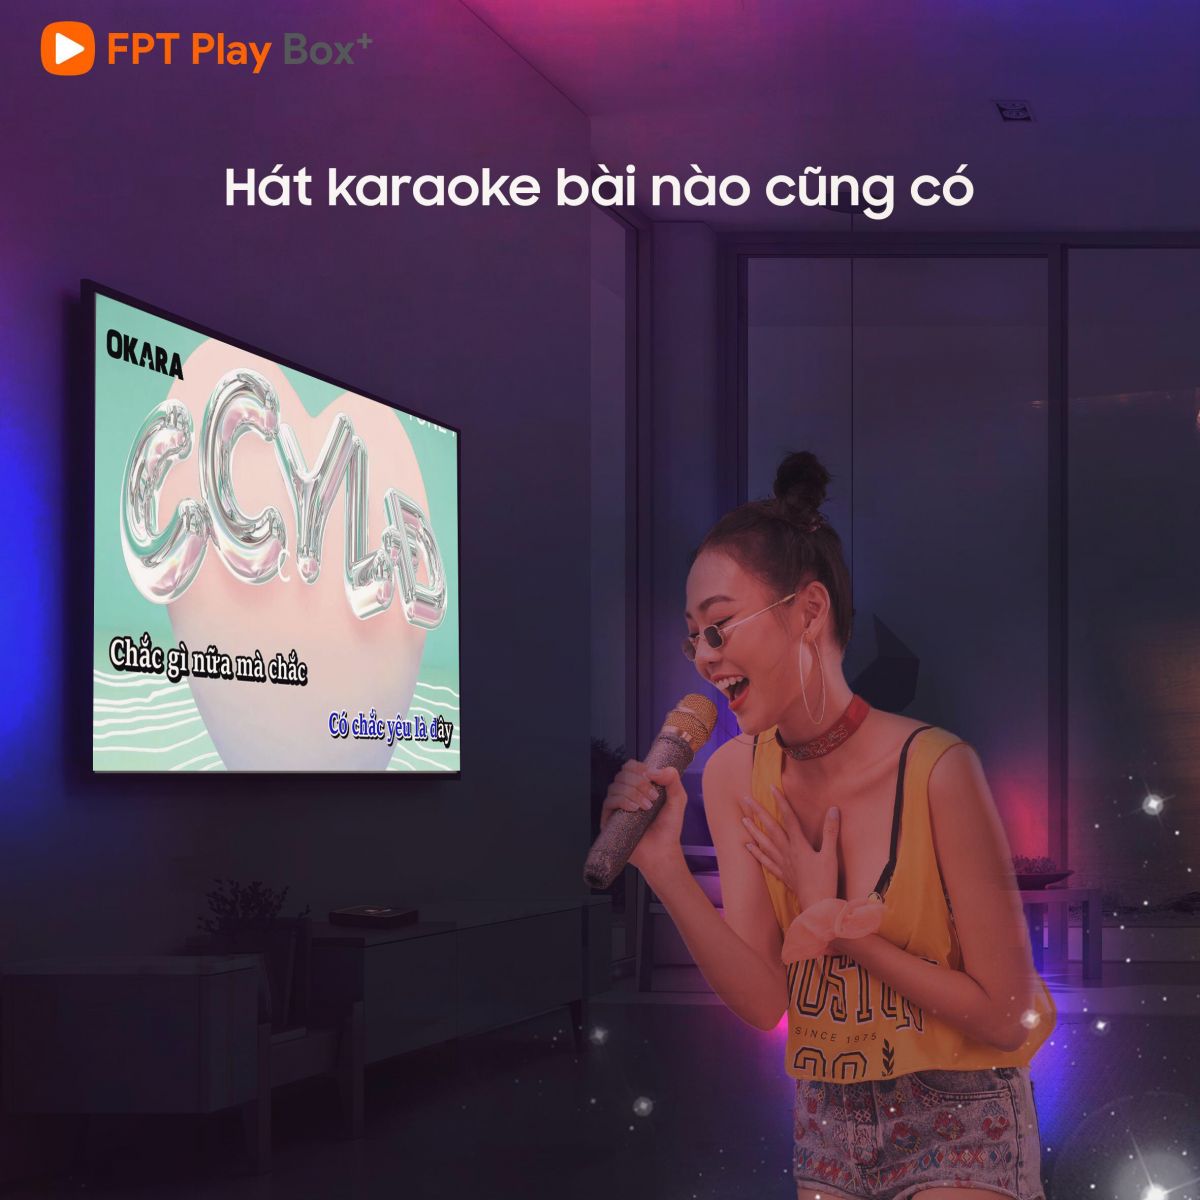 Ứng dụng hát karaoke trên FPT Play Box+ S550